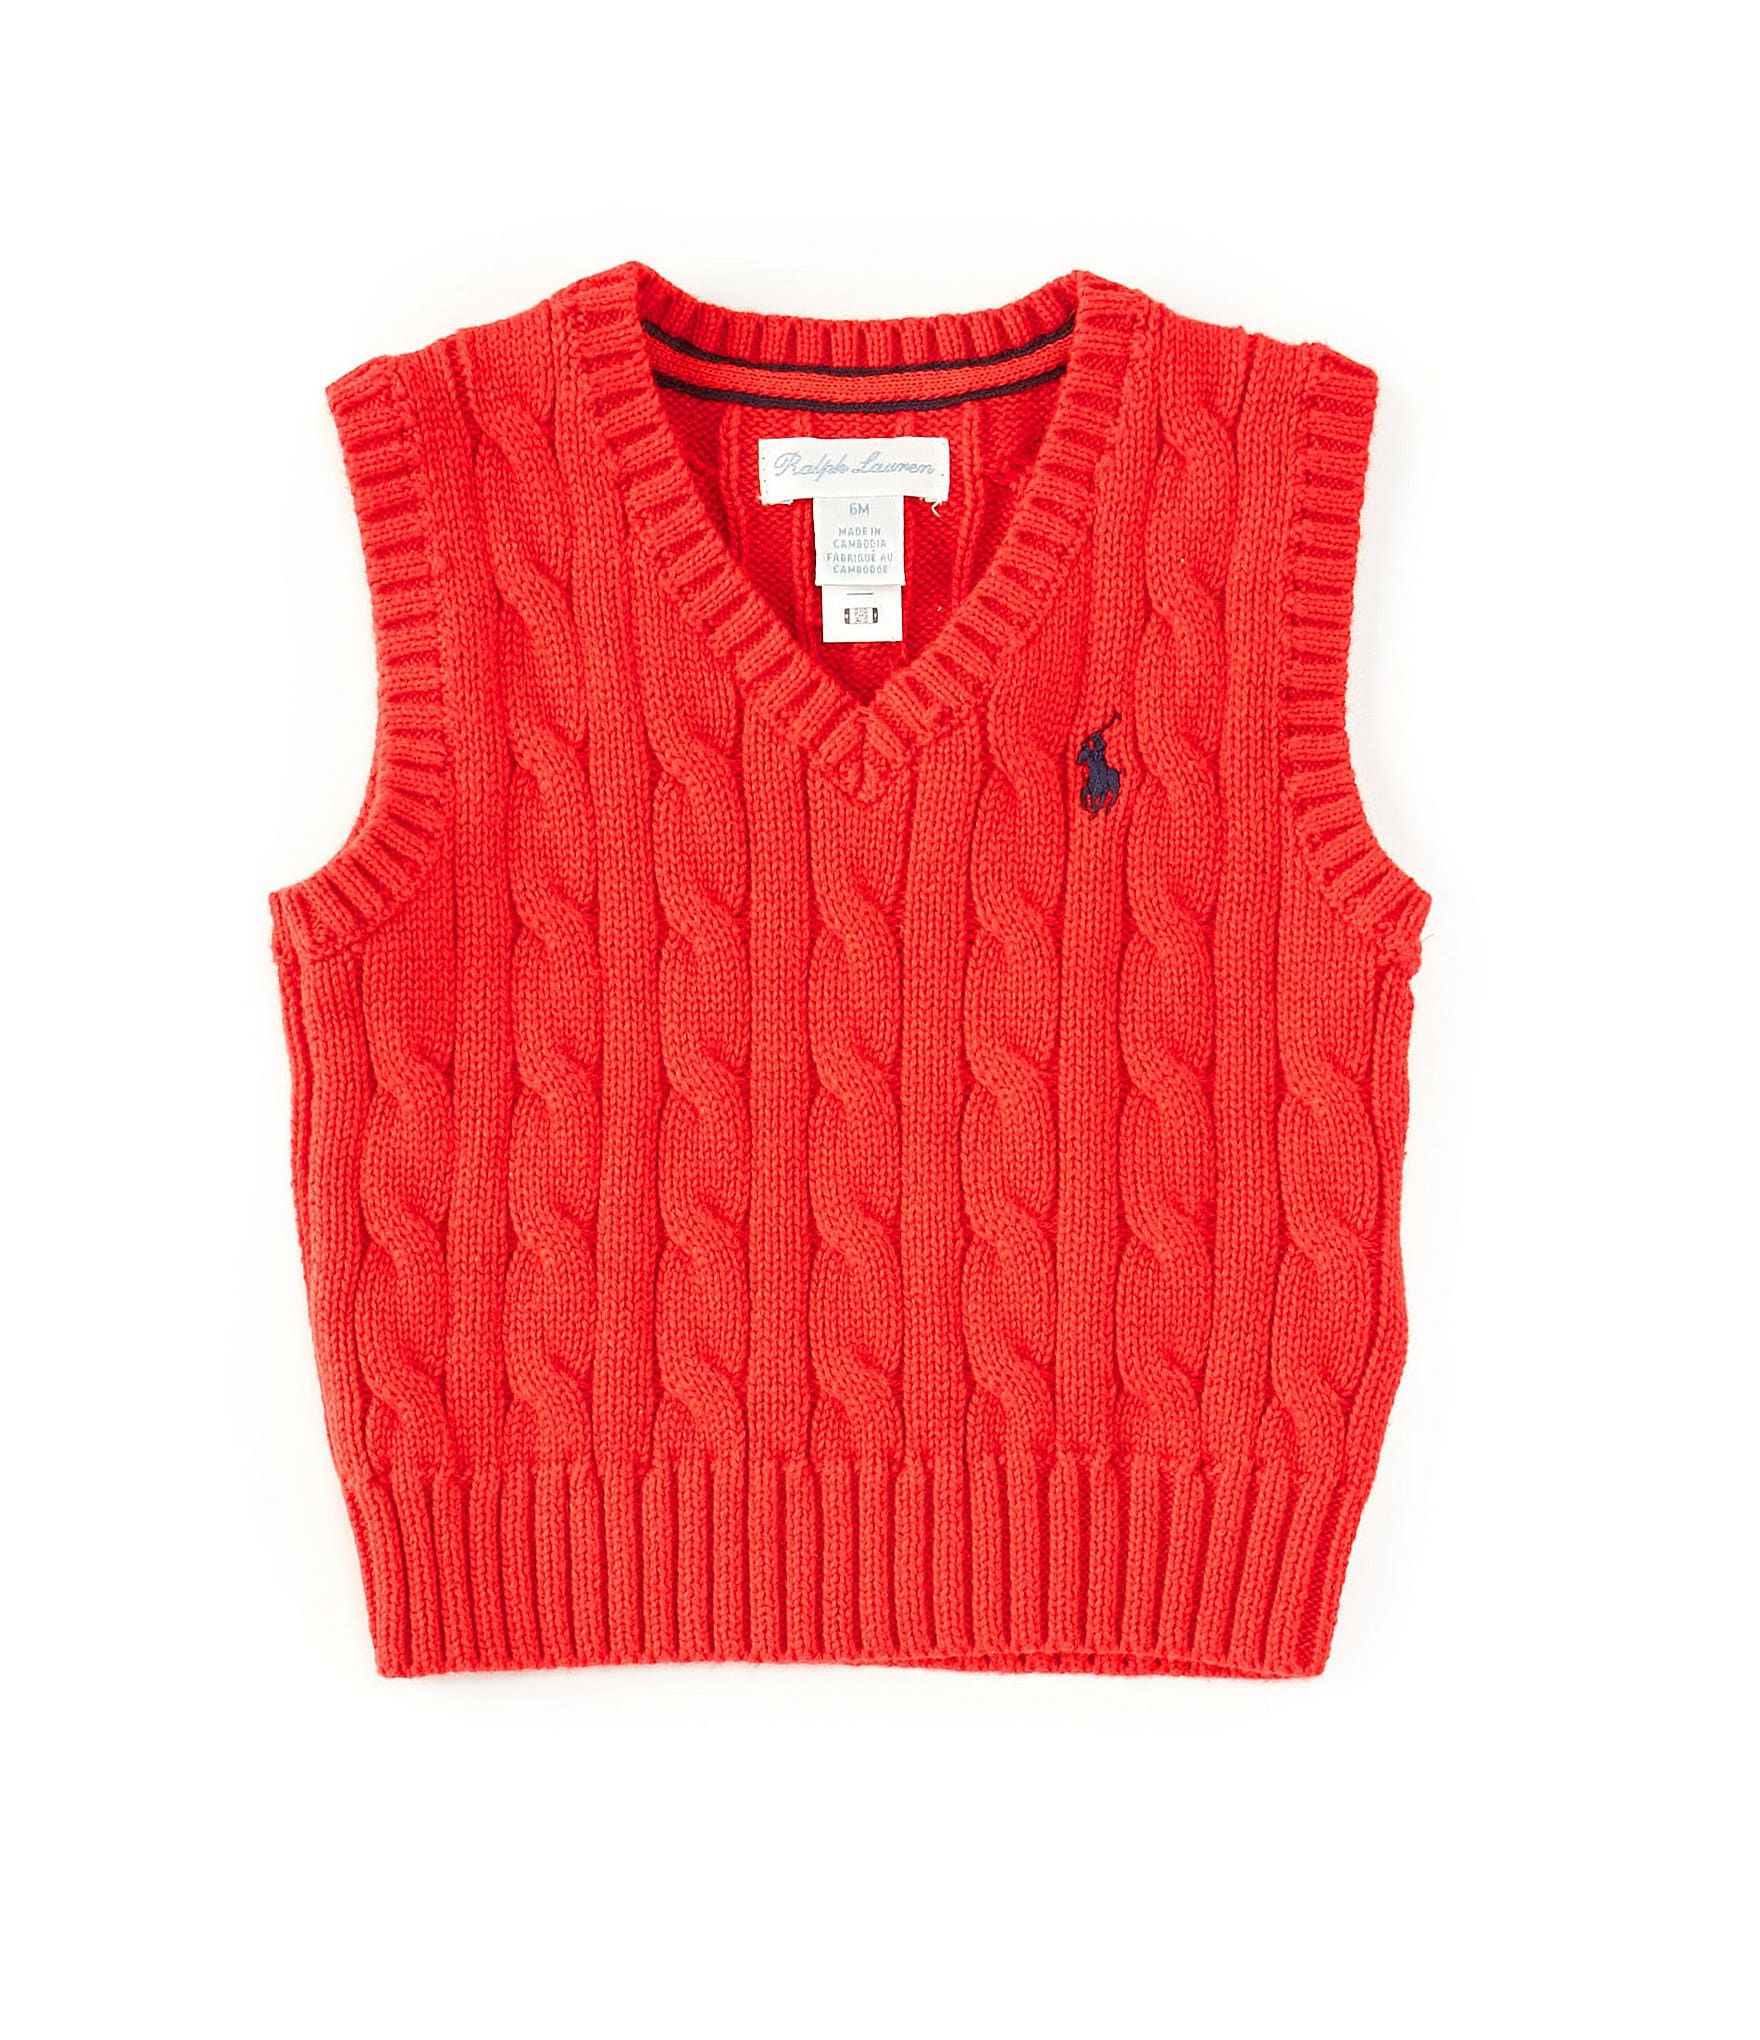 Ralph Lauren Baby Boys 3-24 Months Cable-Knit Cotton Sweater Vest ...